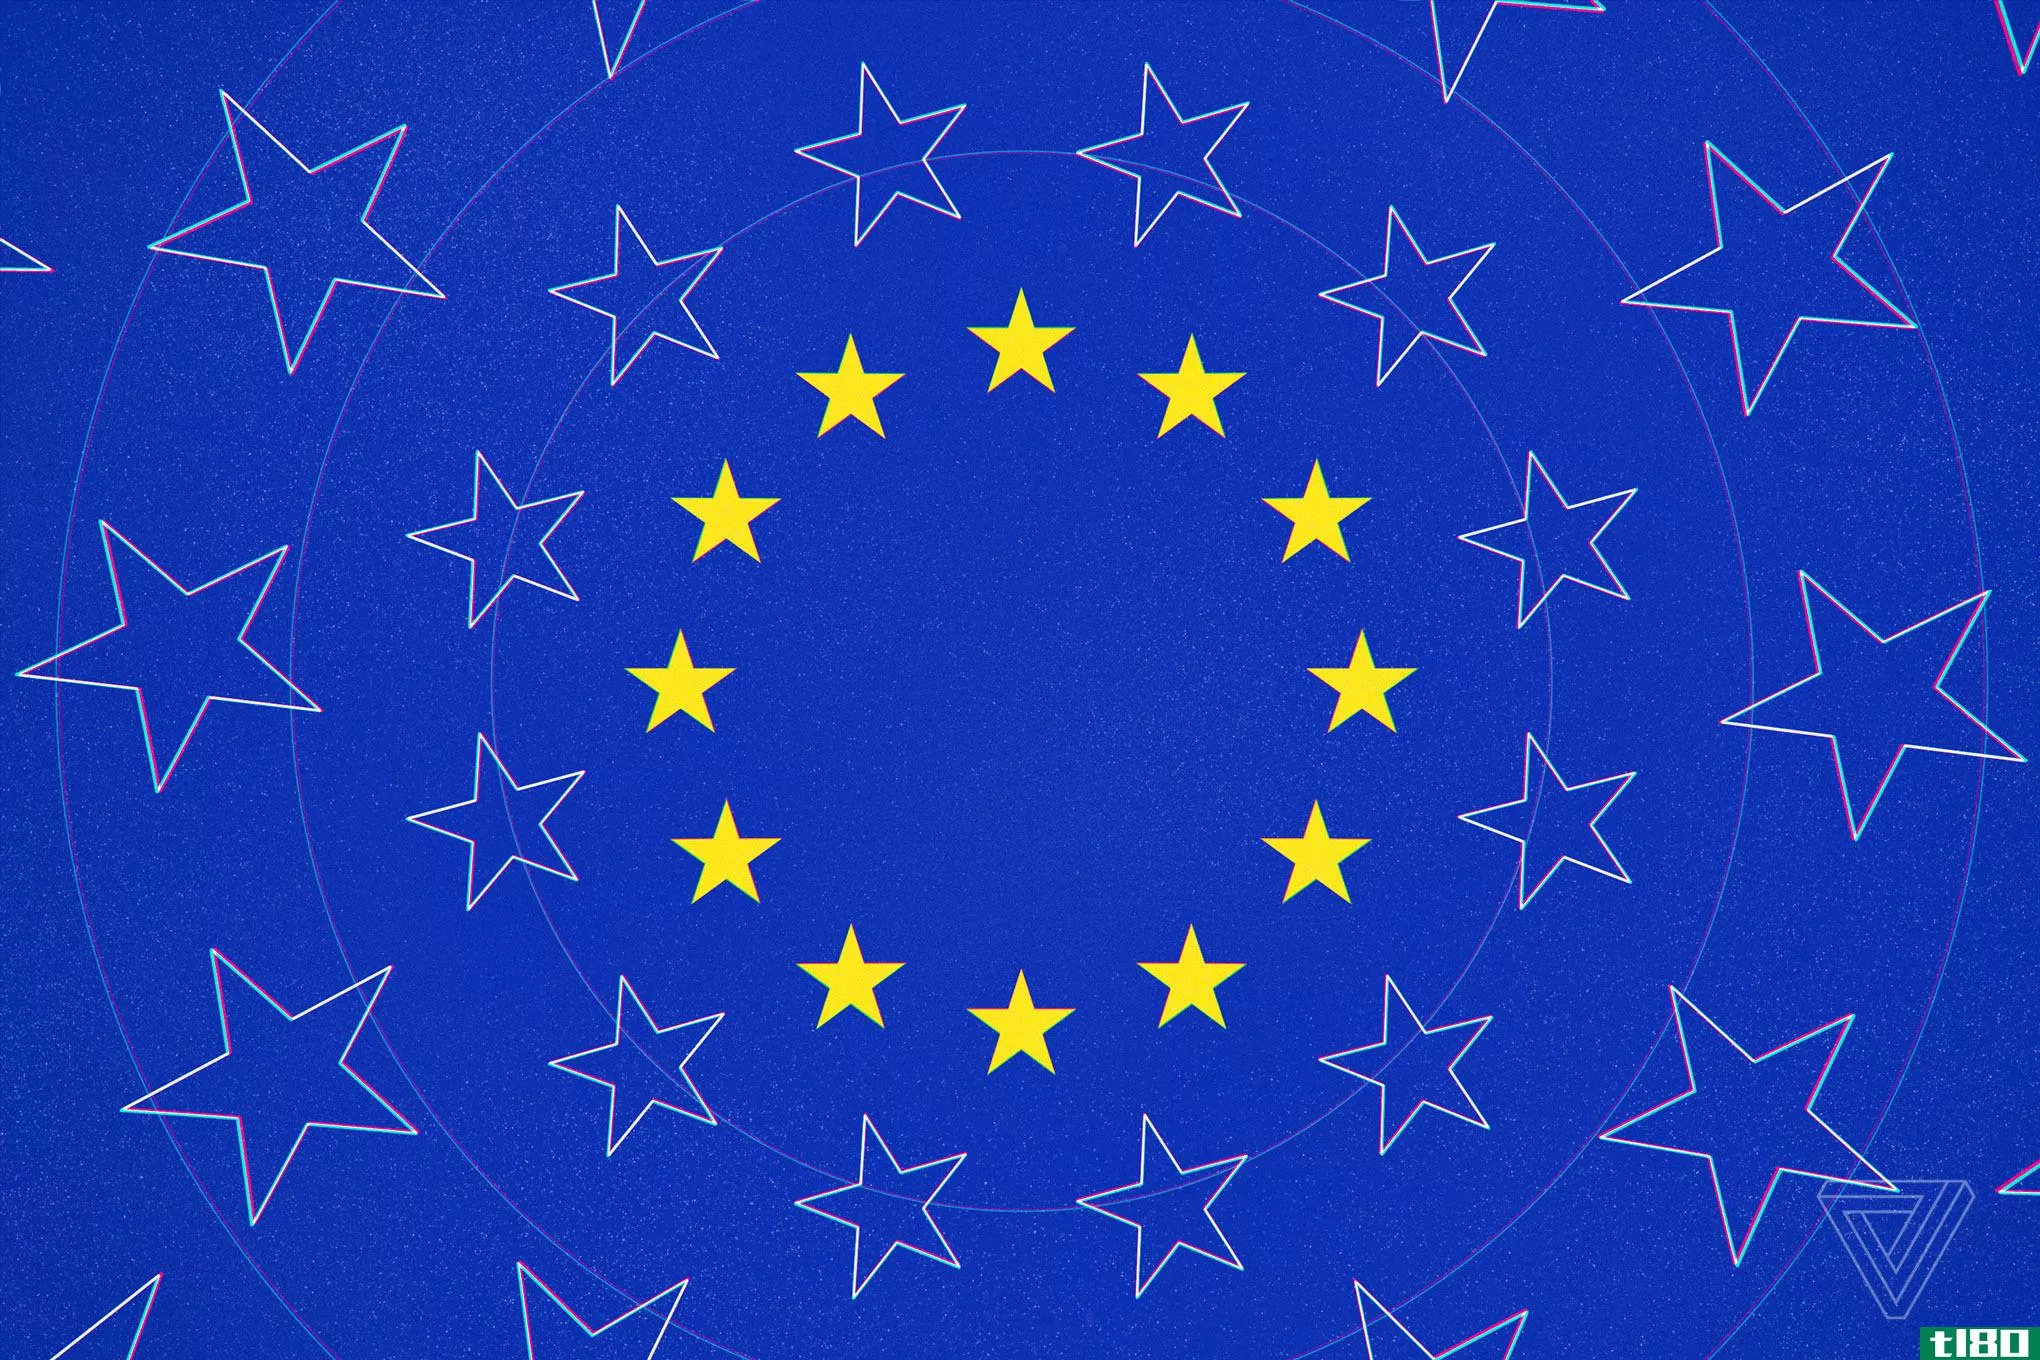 欧盟正试图修正其糟糕的饼干同意政策